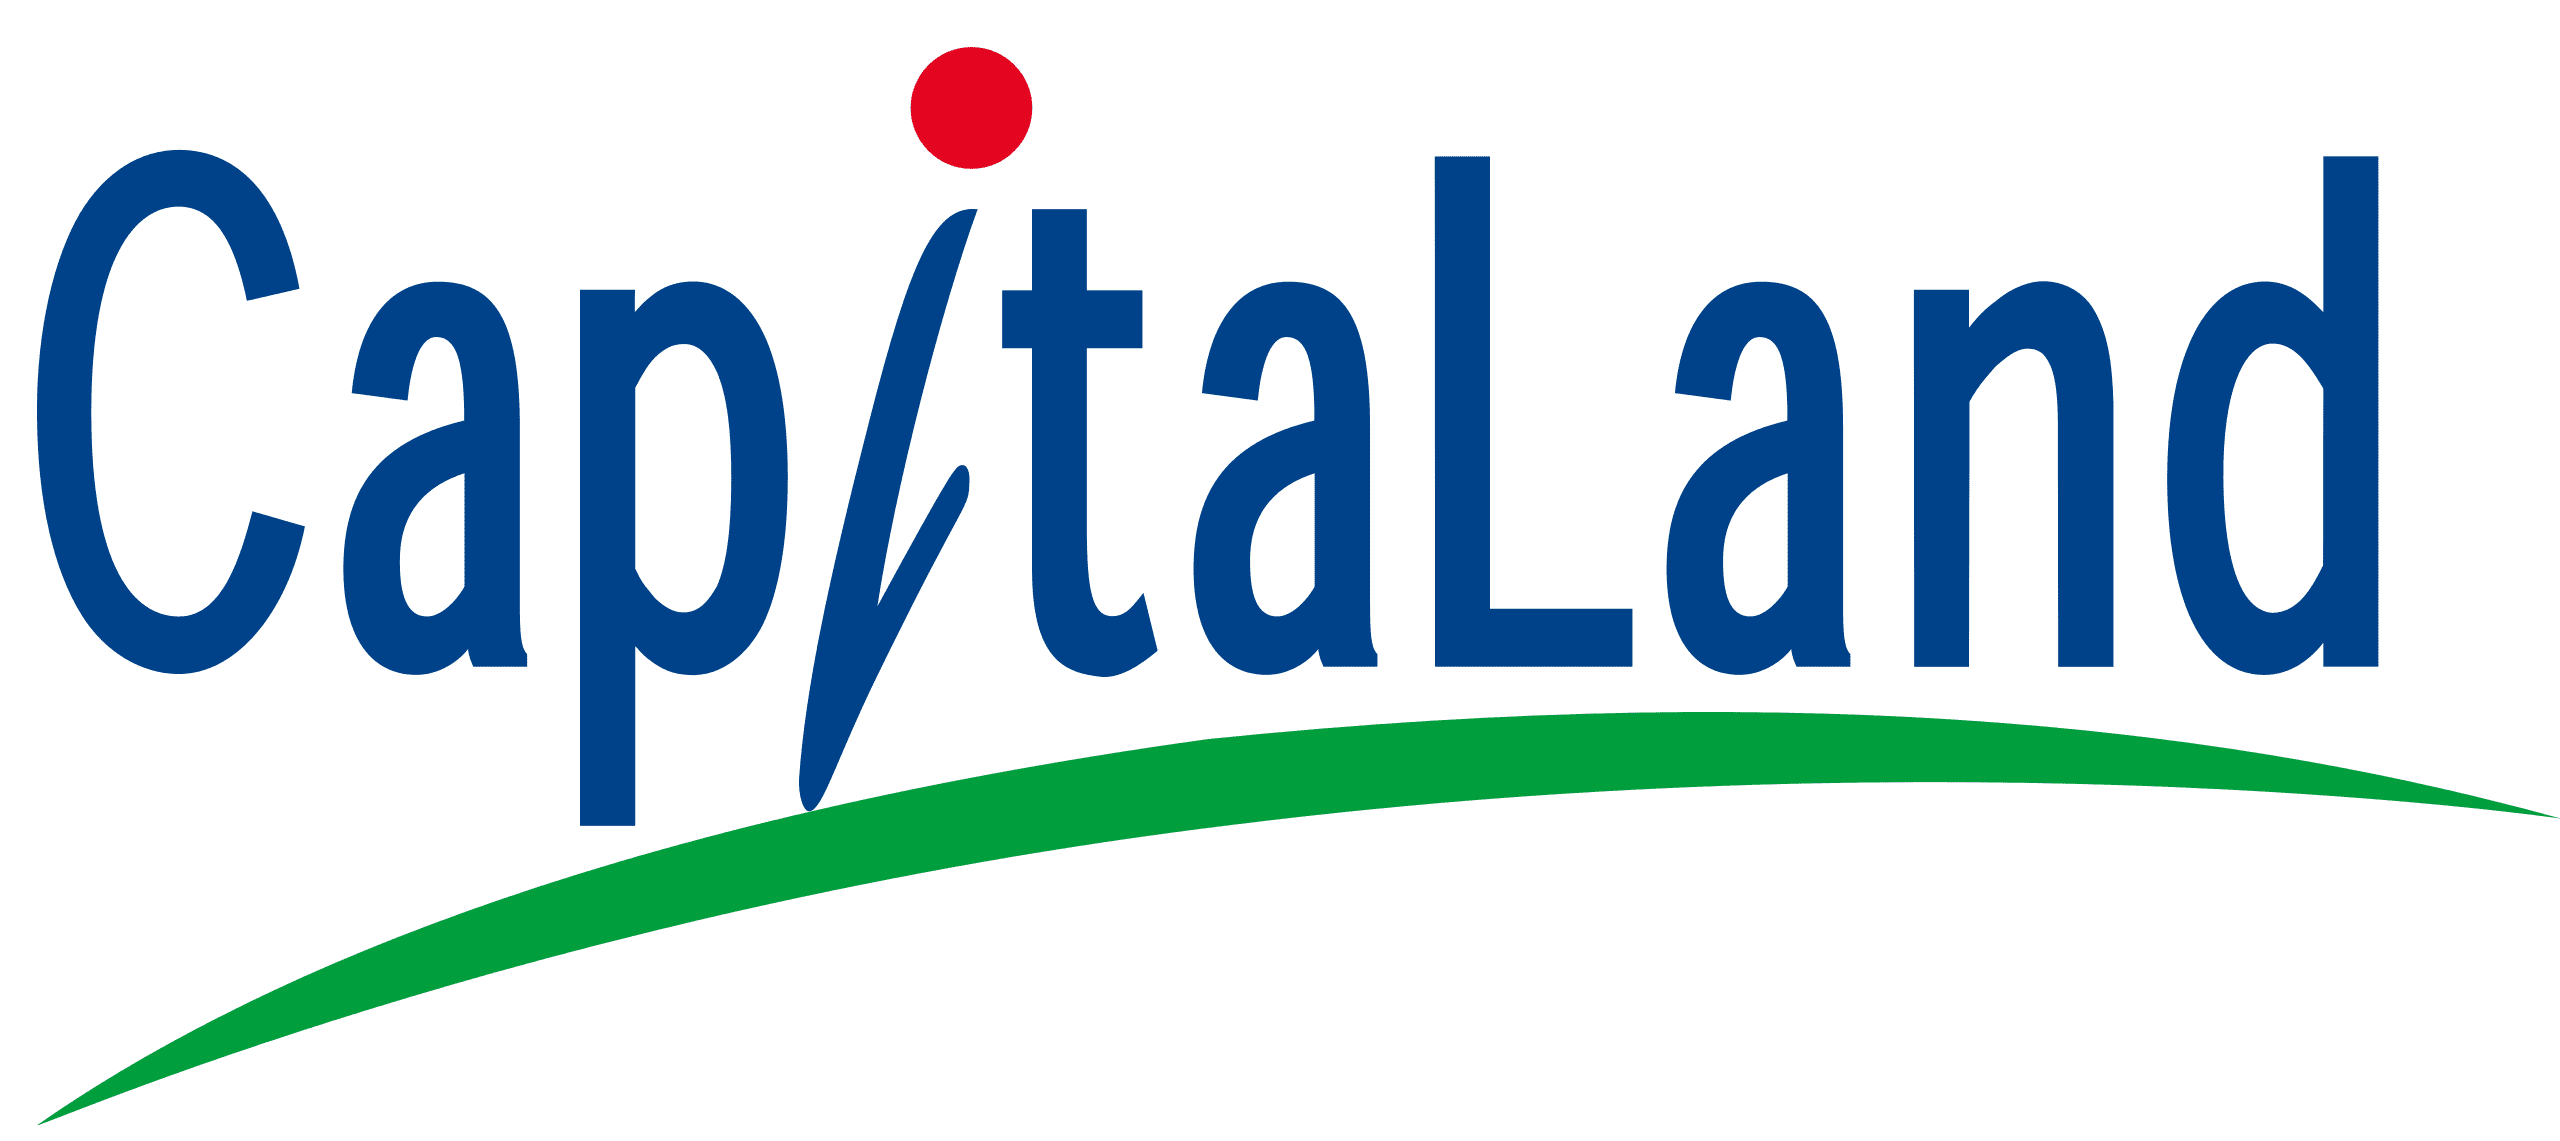 Capitaland Logo